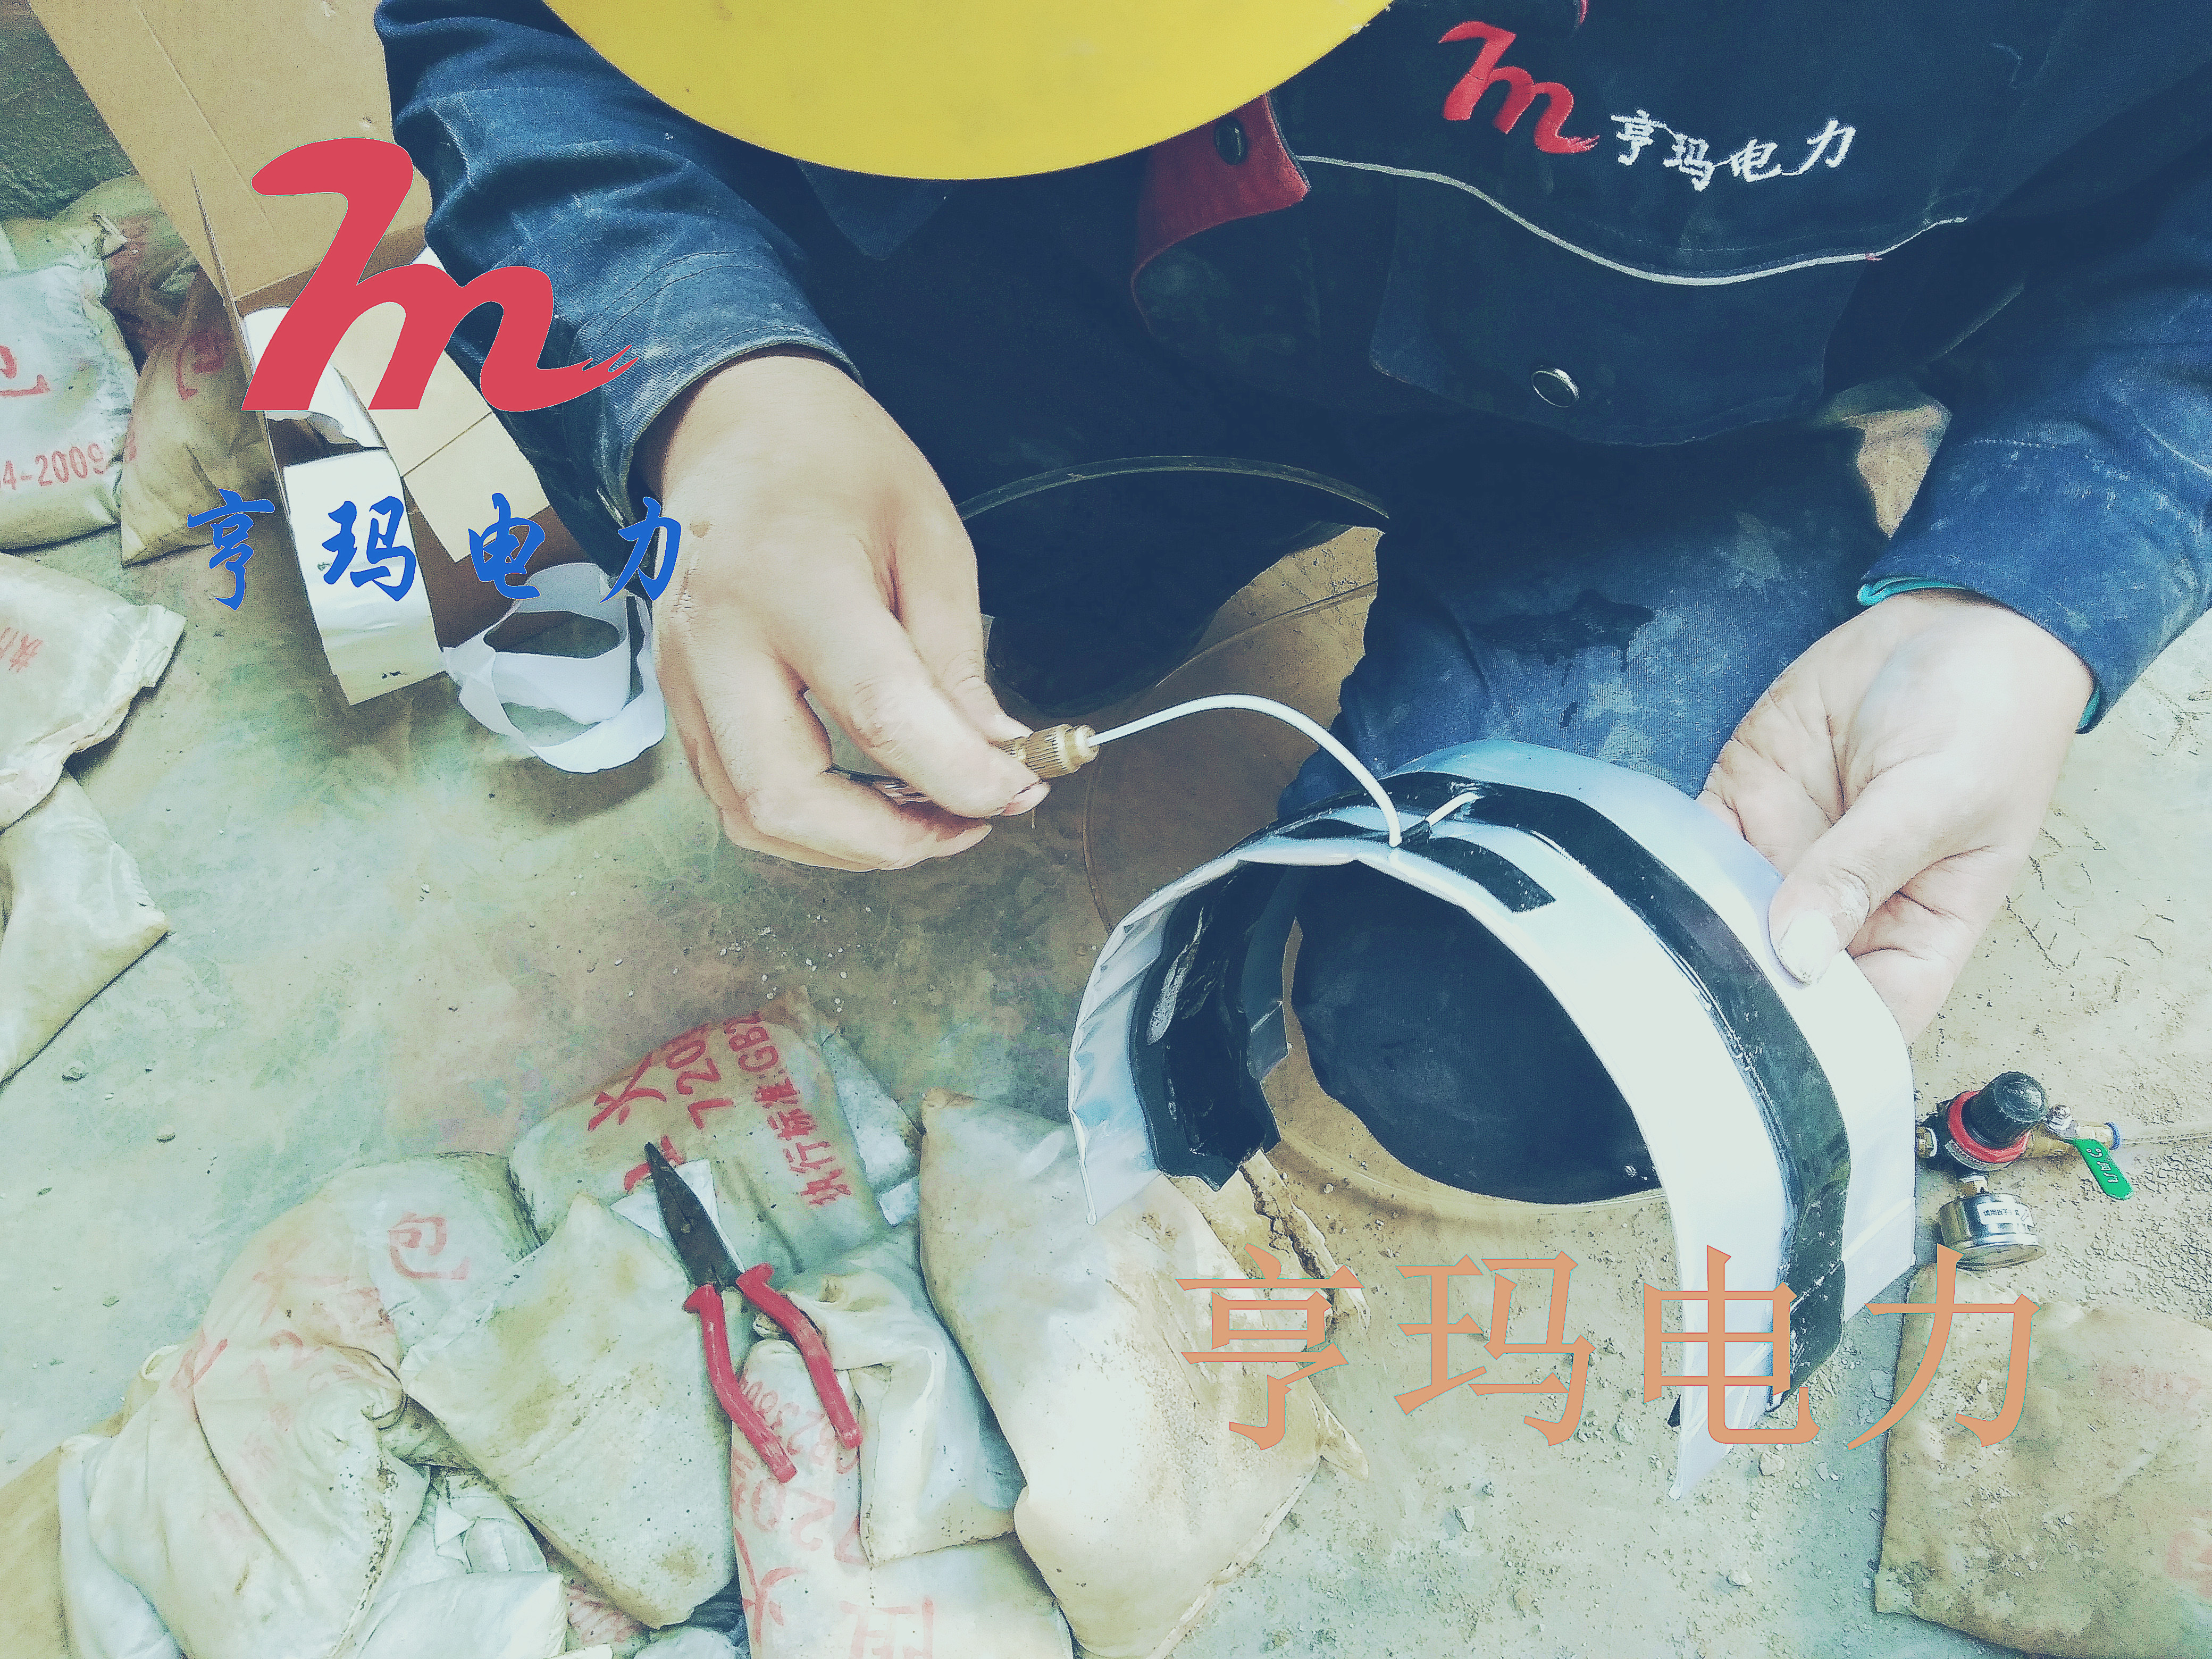 上海充气封堵厂家-供应-直销 充气式管塞   充气式密封封堵器 管道密封封堵器图片